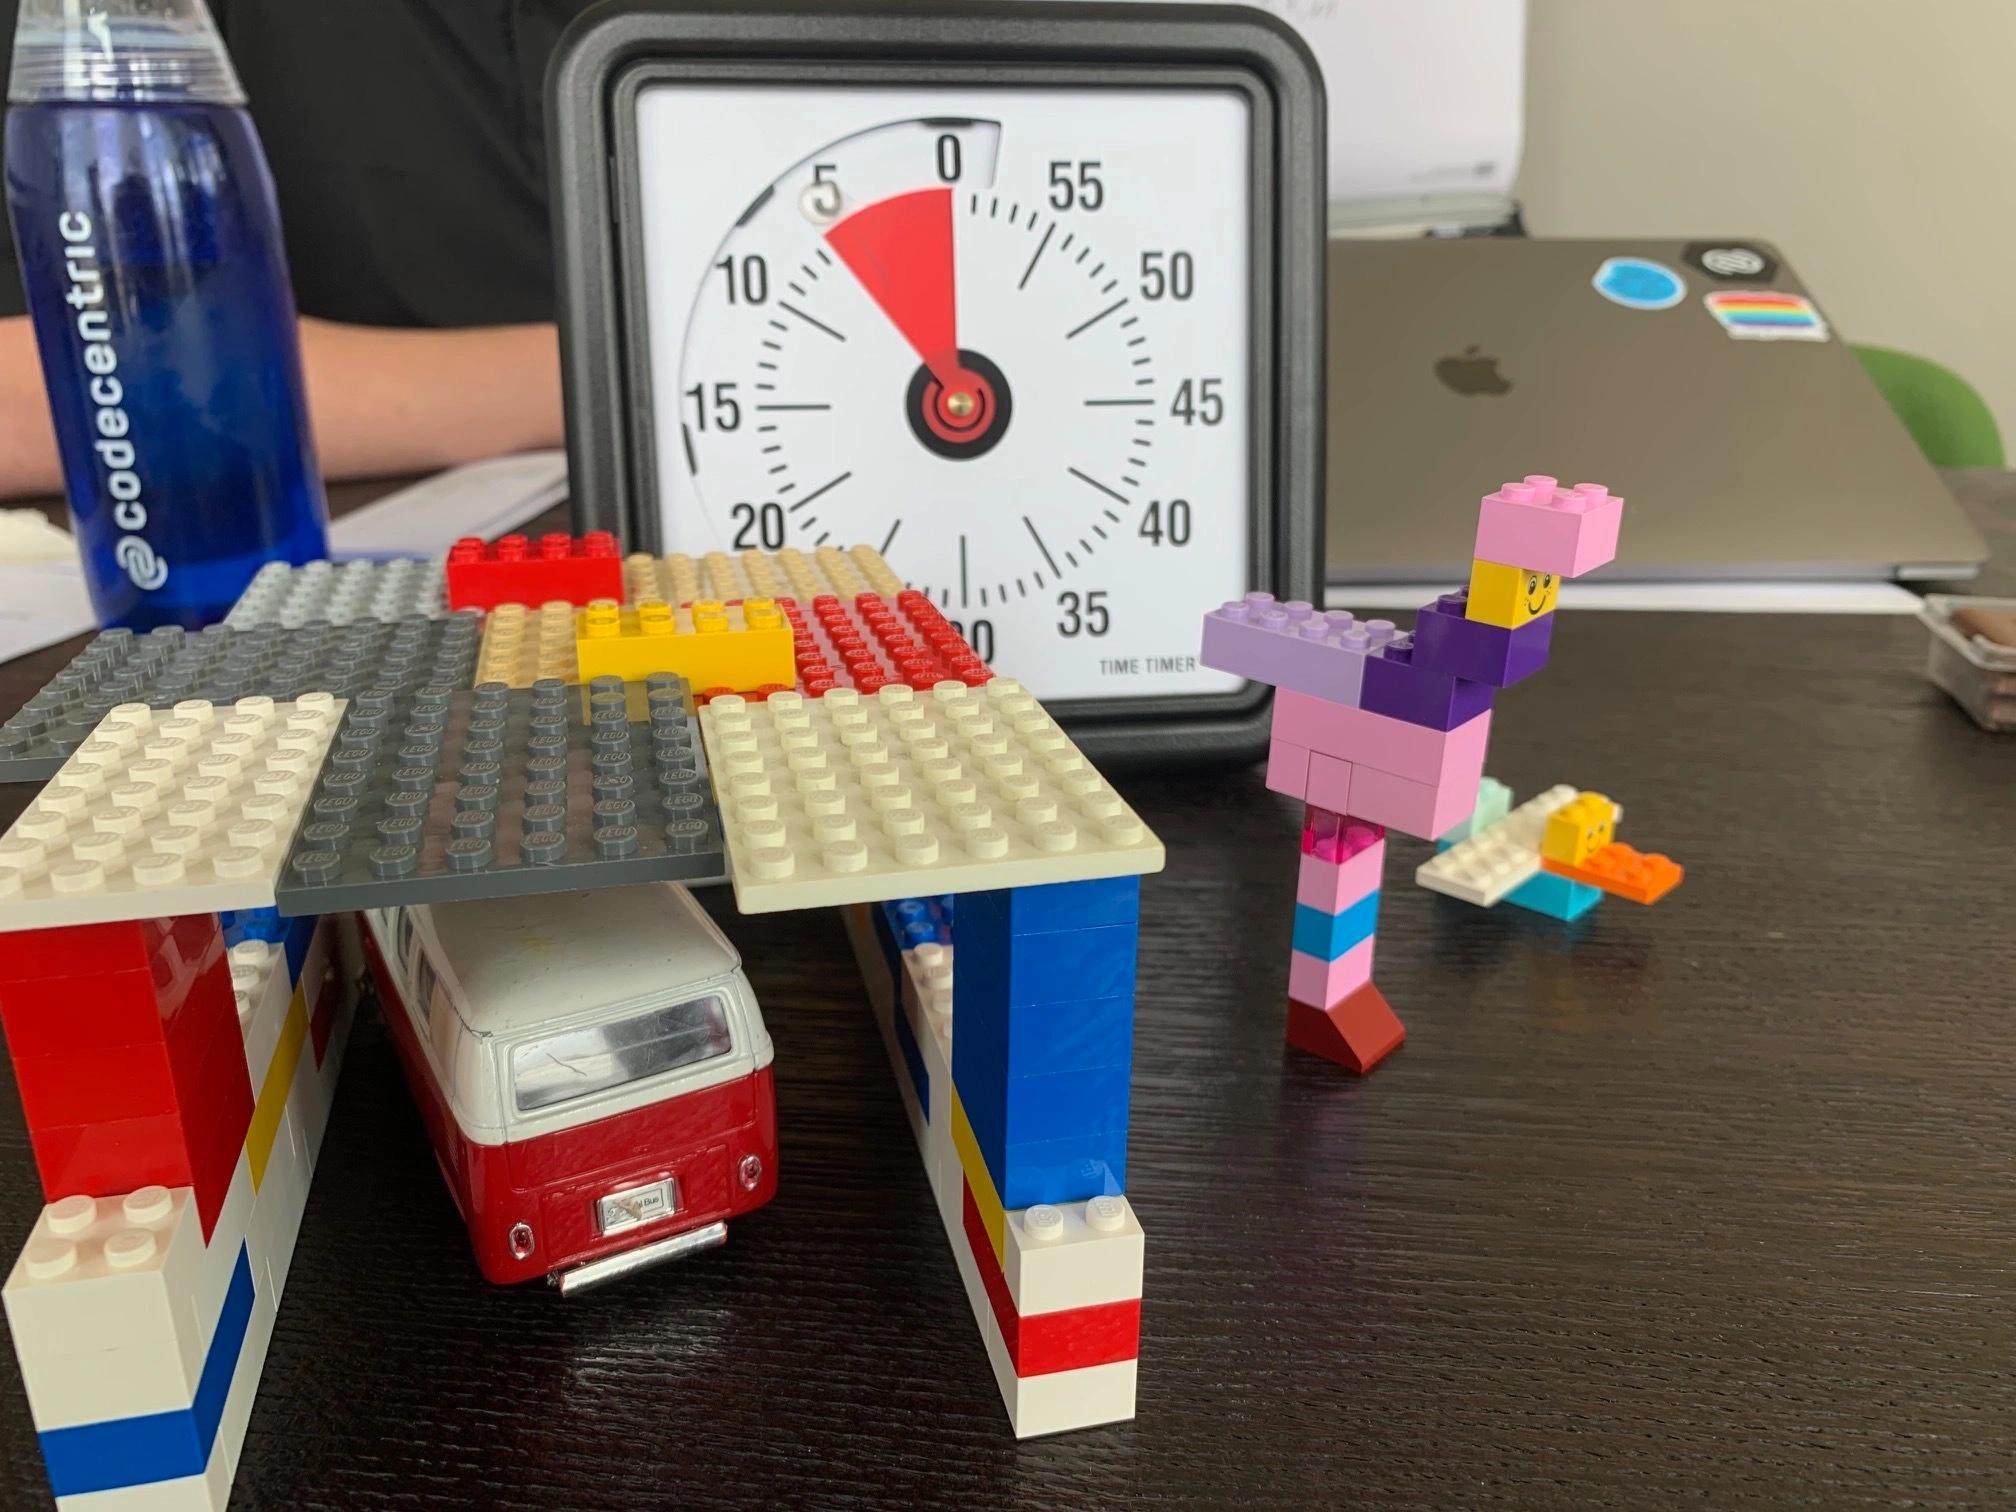 Eine aus Lego gebaute Garage mit einem Spielzeugauto auf einem Tisch, dahinter ein Wecker und eine codecentric Flasche.